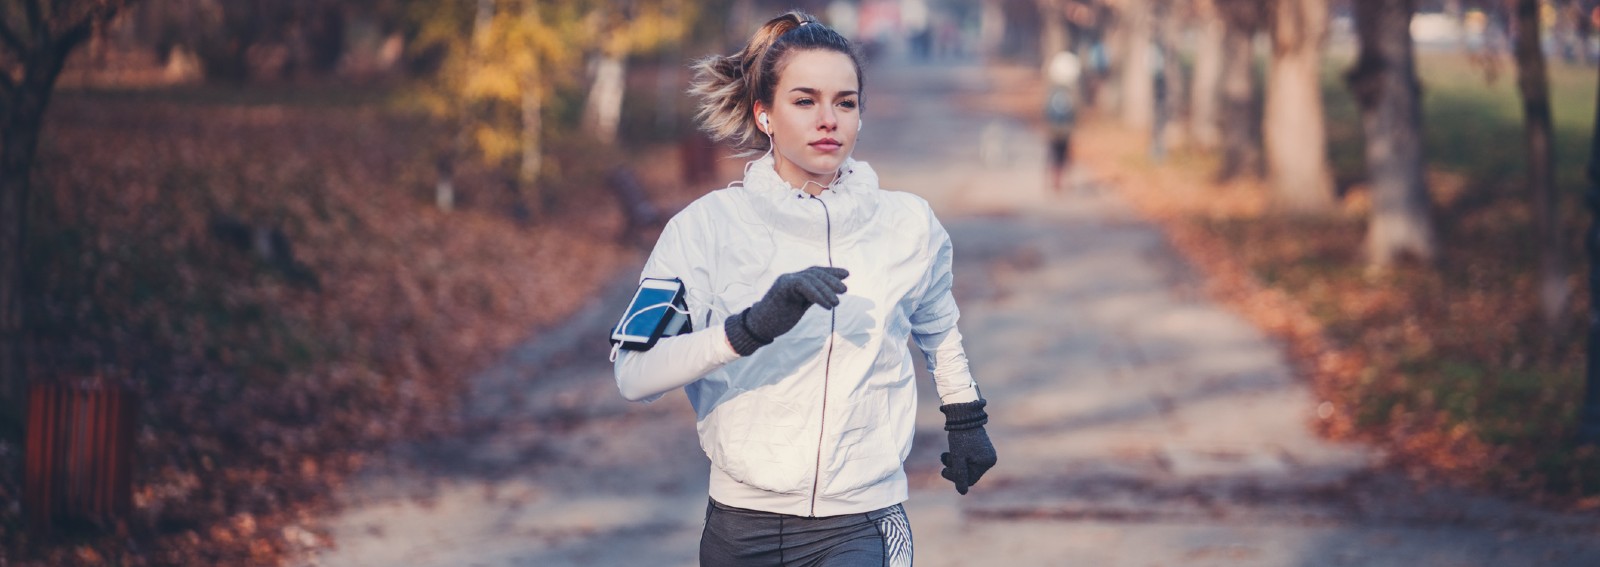 running-walking-exercise-diet